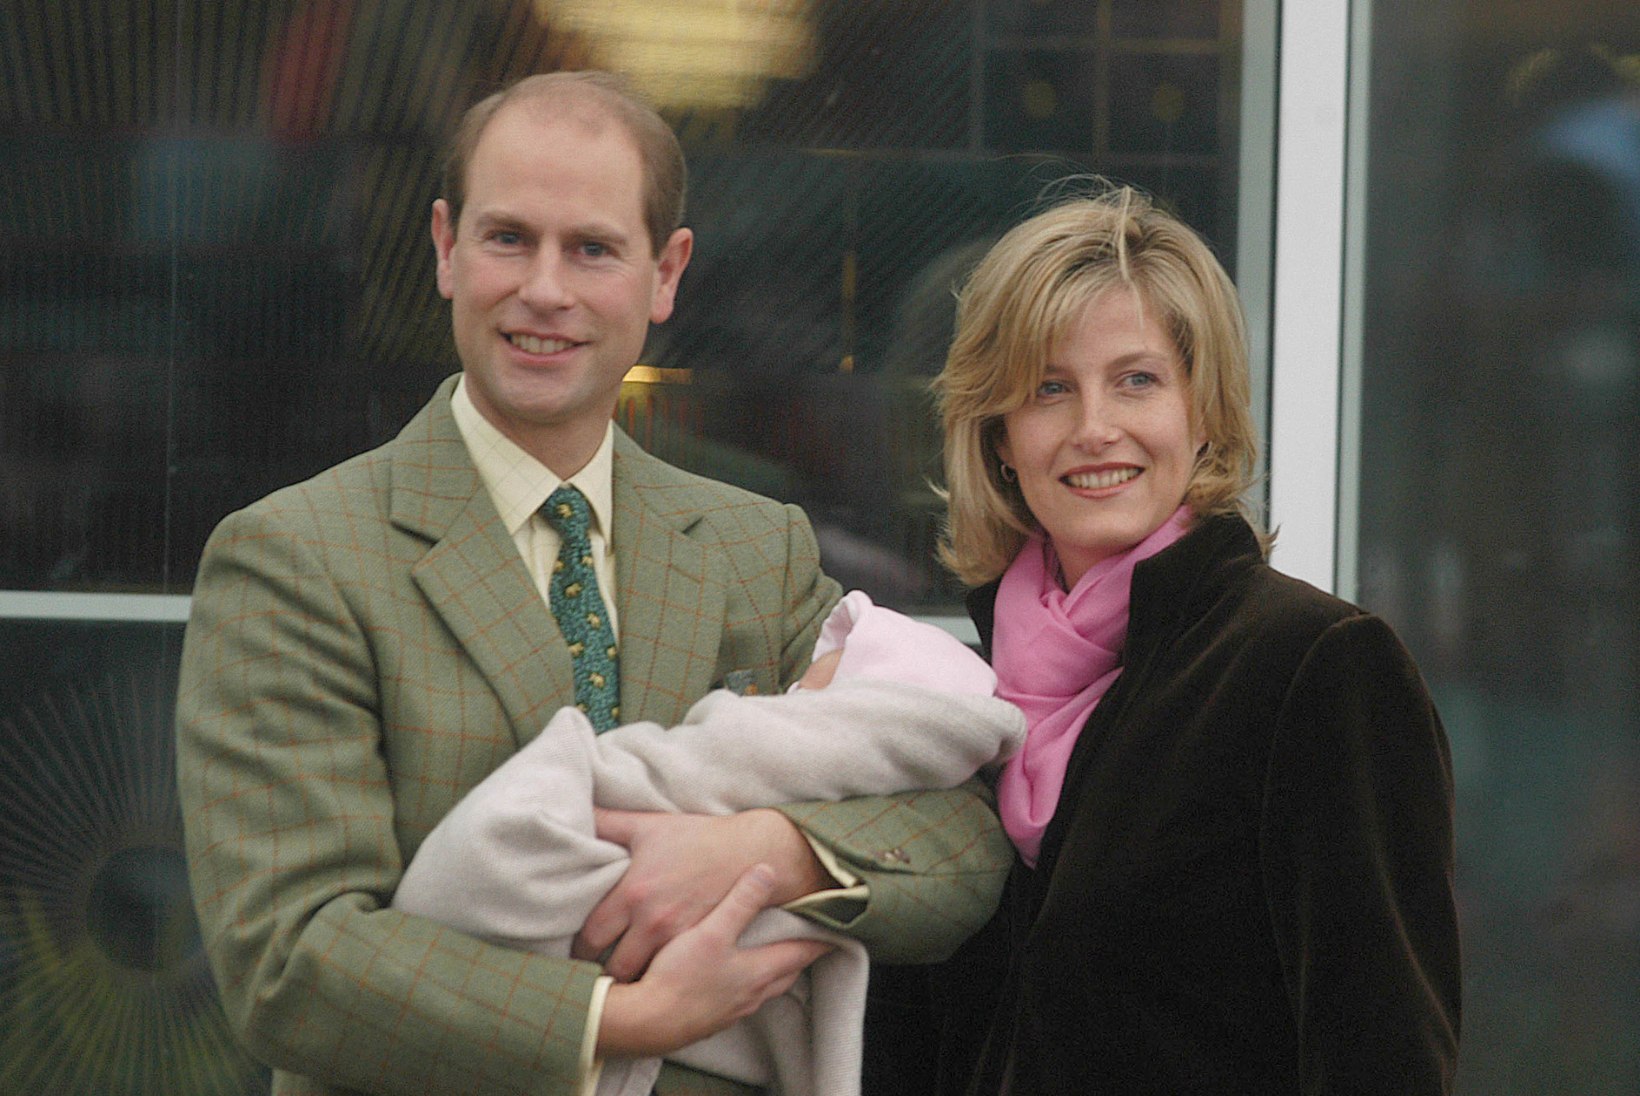 Eestisse visiidile saabuvad kuninganna Elizabethi noorim poeg prints Edward ja tema abikaasa Sophie on lapse saamisel üle elanud raskeid aegu